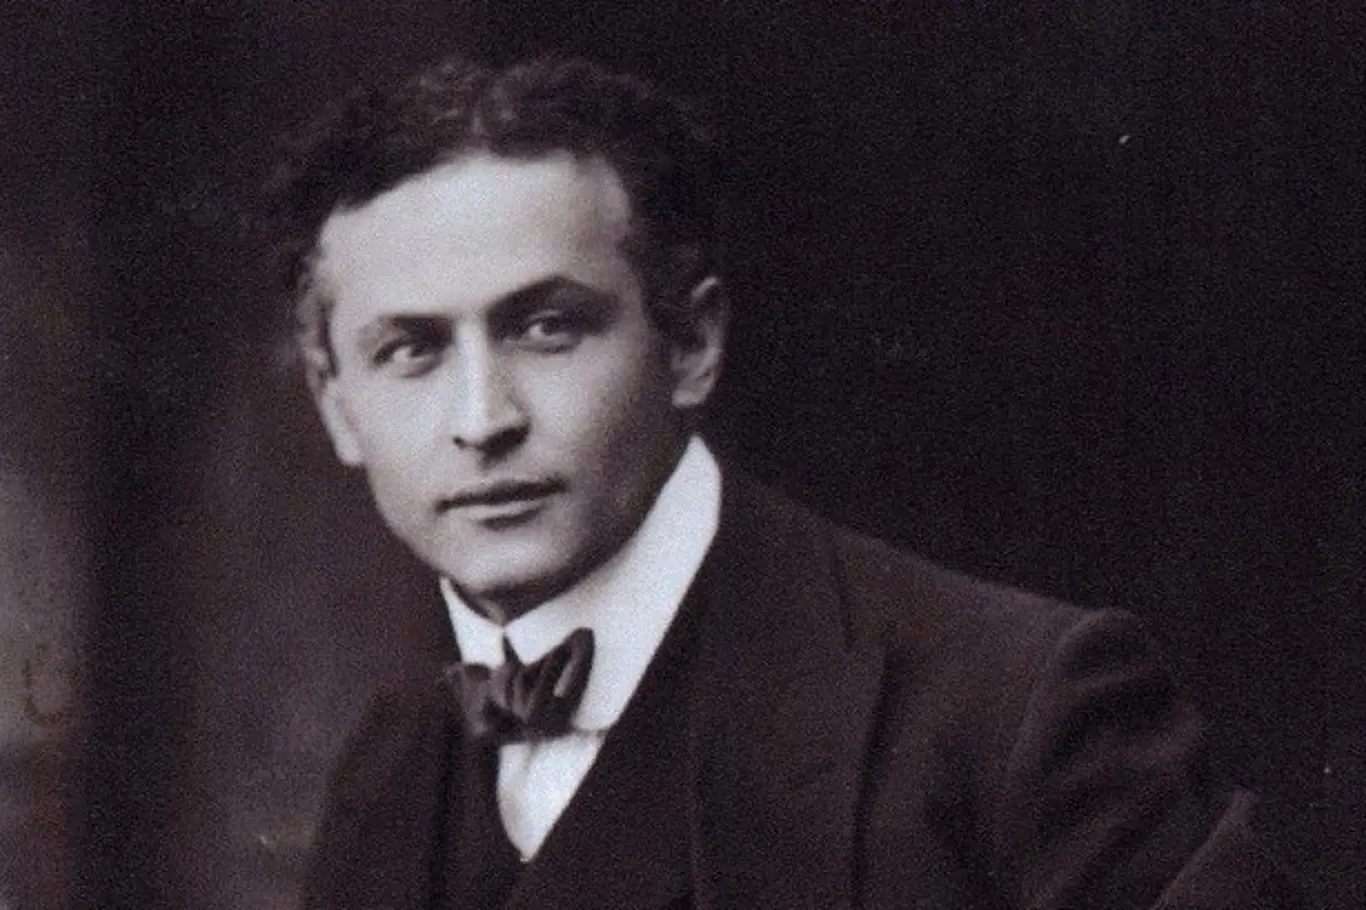 Harry Houdini, se jmenoval Ehrich Weiss, ale pod tímhle jménem ho nikdo nezná